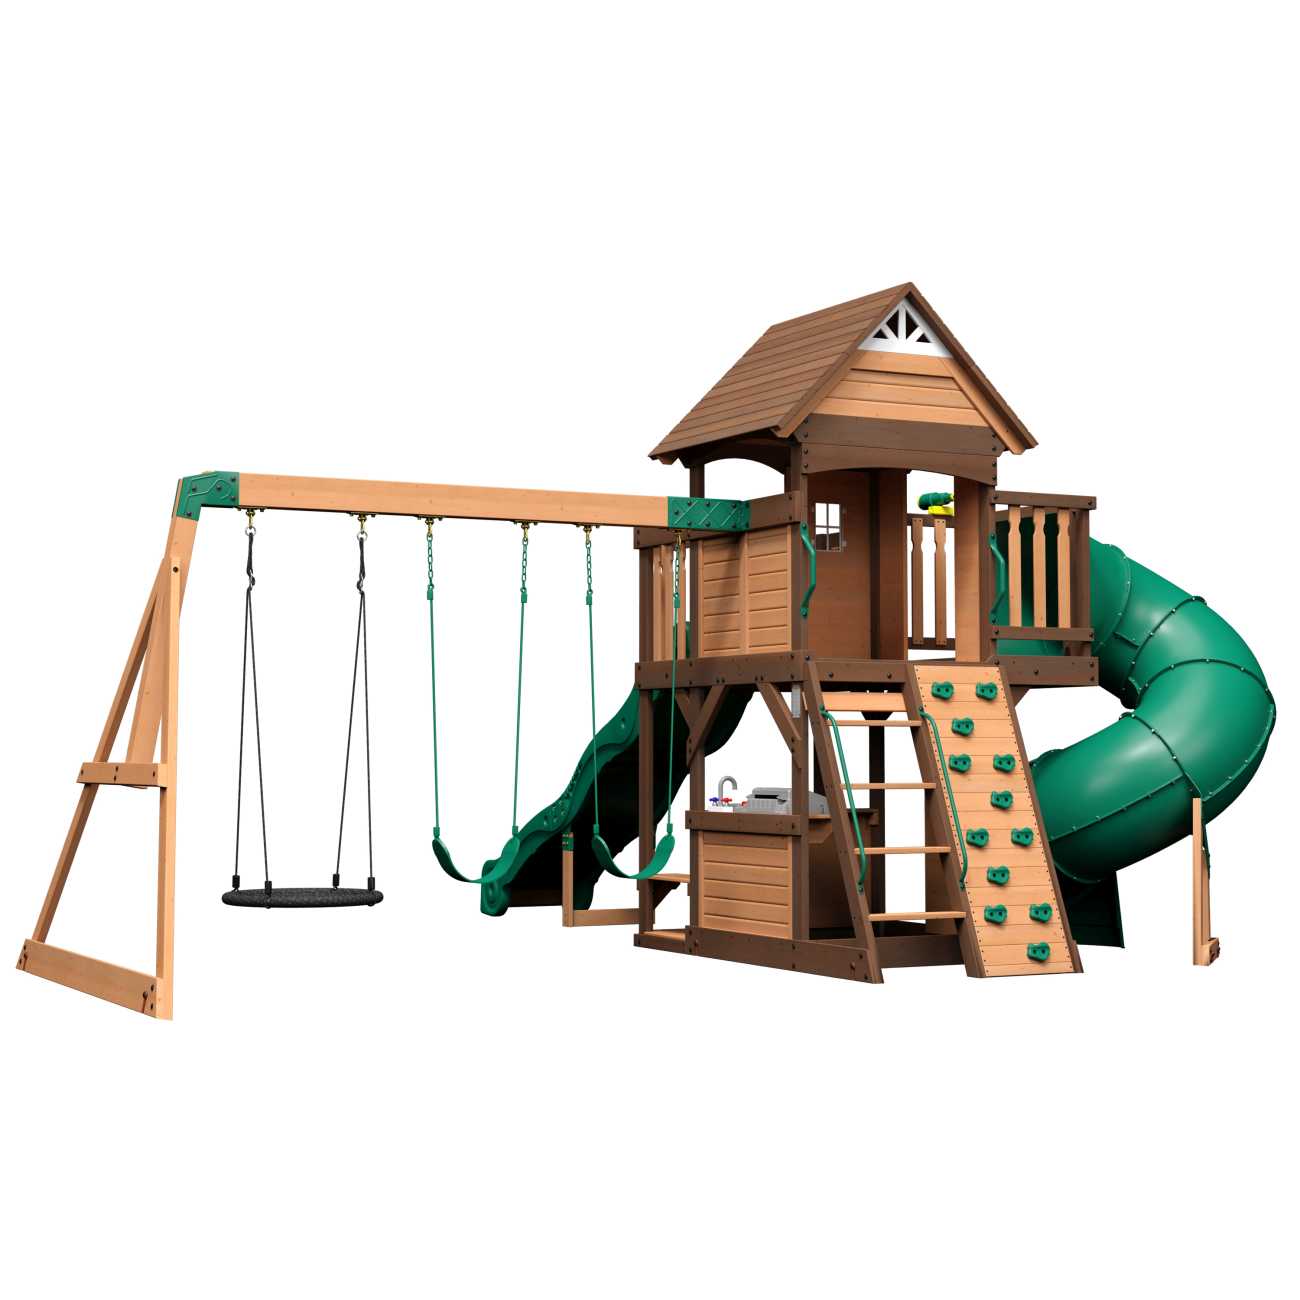 Backyard Spielturm Cedar Cove, Spielturm mit Röhrenrutsche und Nestschaukel für Kinder